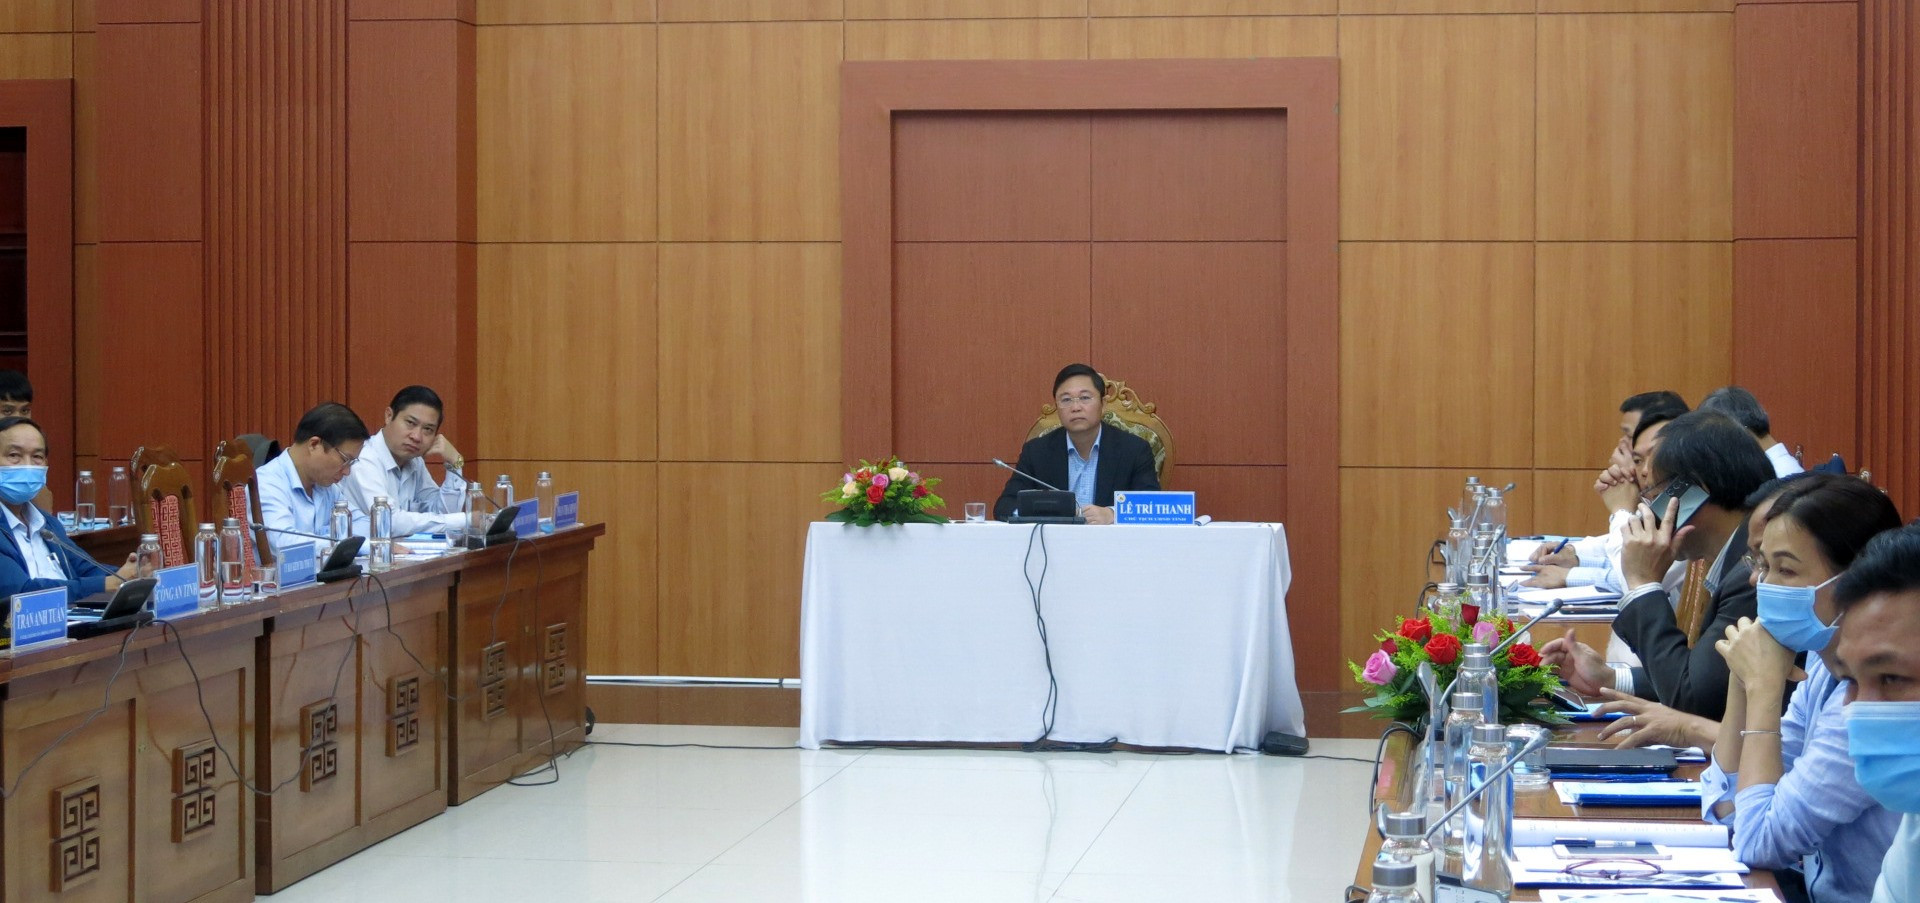 Chủ tịch UBND tỉnh Lê Trí Thanh chủ trì hội nghị tại điểm cầu UBND tỉnh Quảng Nam.Ảnh: T.D